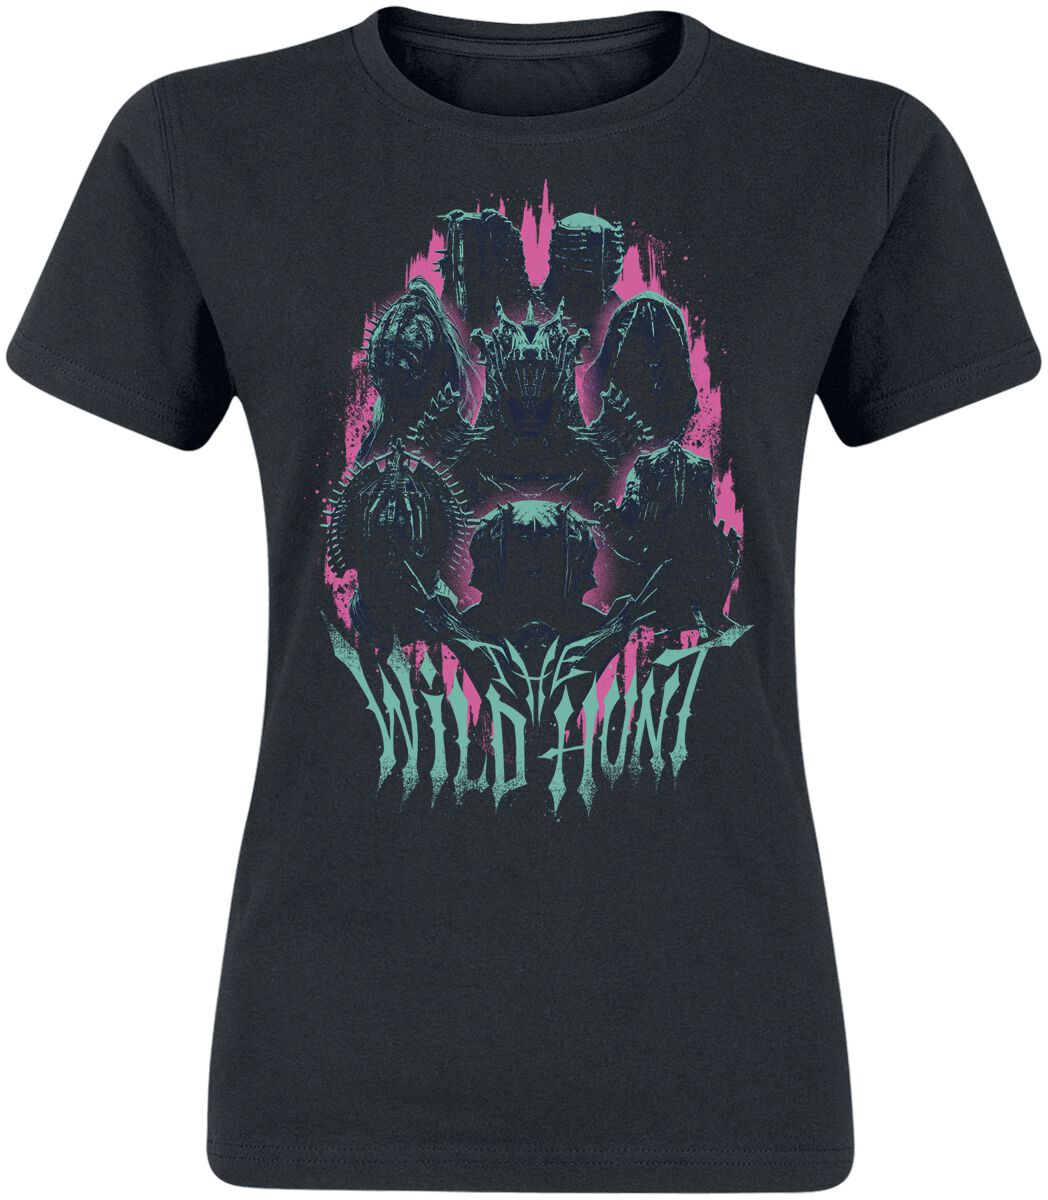 The Witcher T-Shirt - Season 3 - Wildhunt - S bis XXL - für Damen - Größe XXL - schwarz  - EMP exklusives Merchandise!